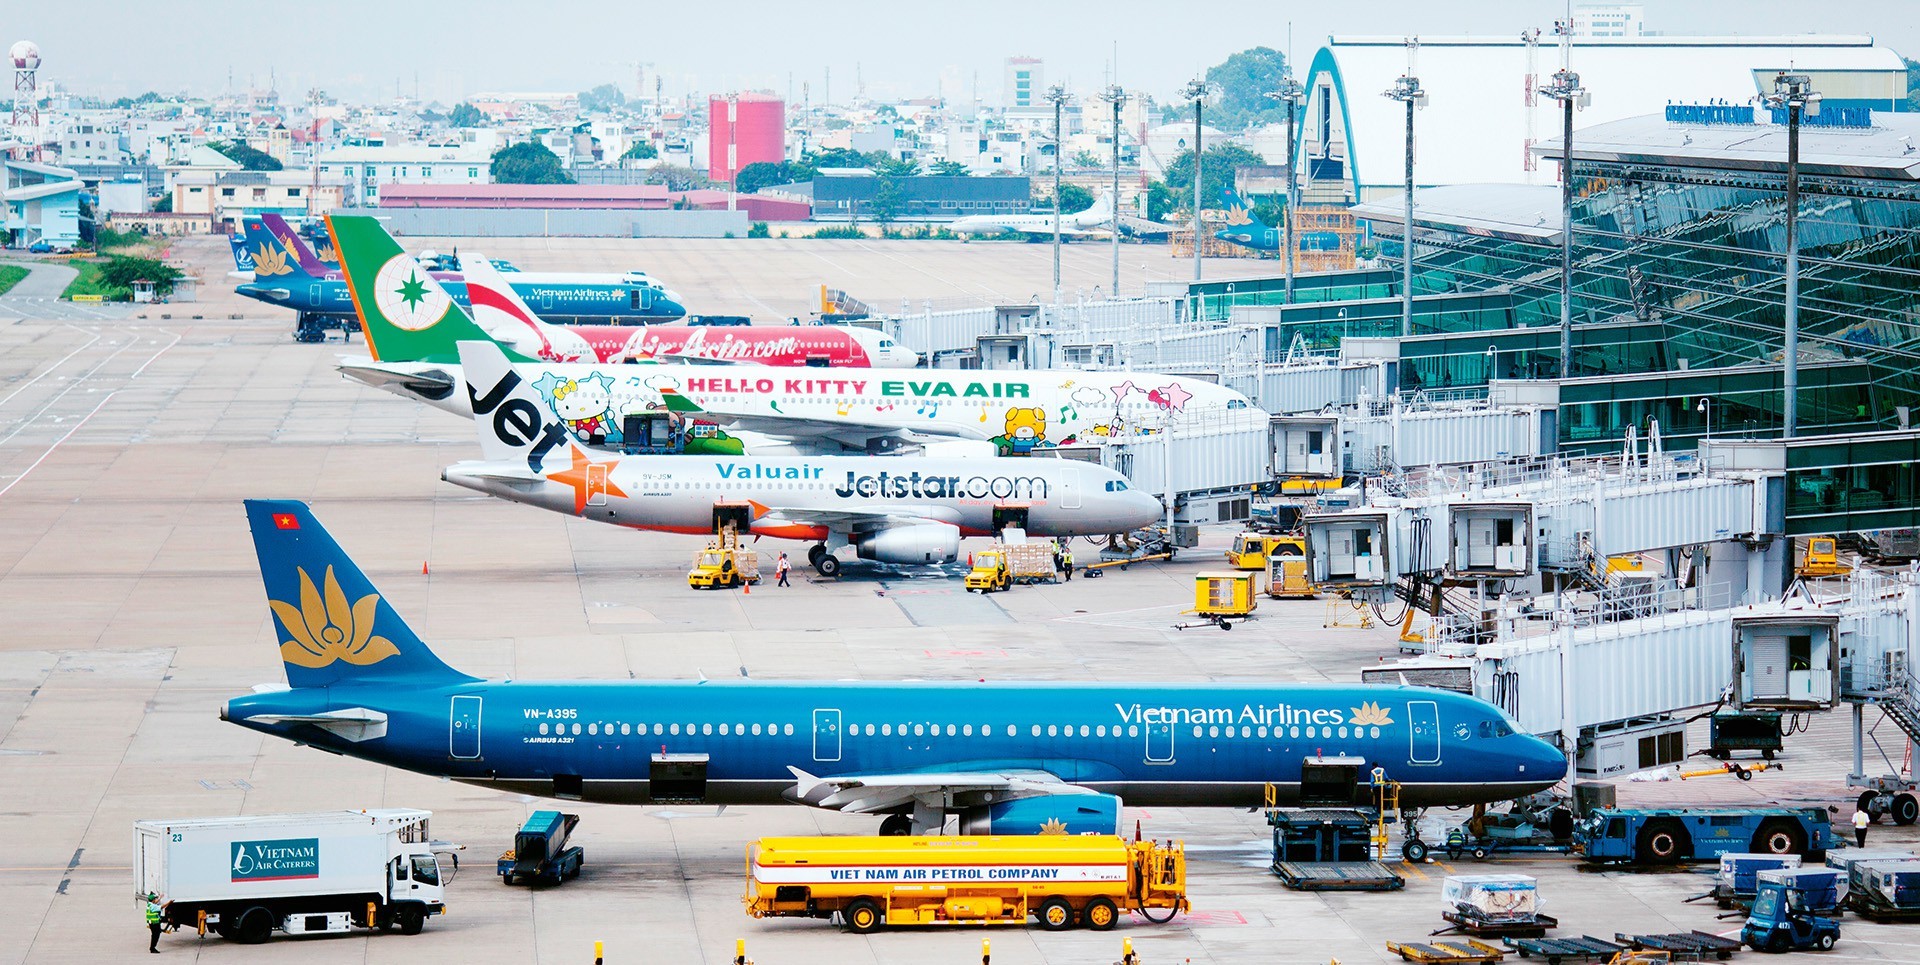 Giấy phép kinh doanh cảng hàng không được cấp lại trong trường hợp nào?